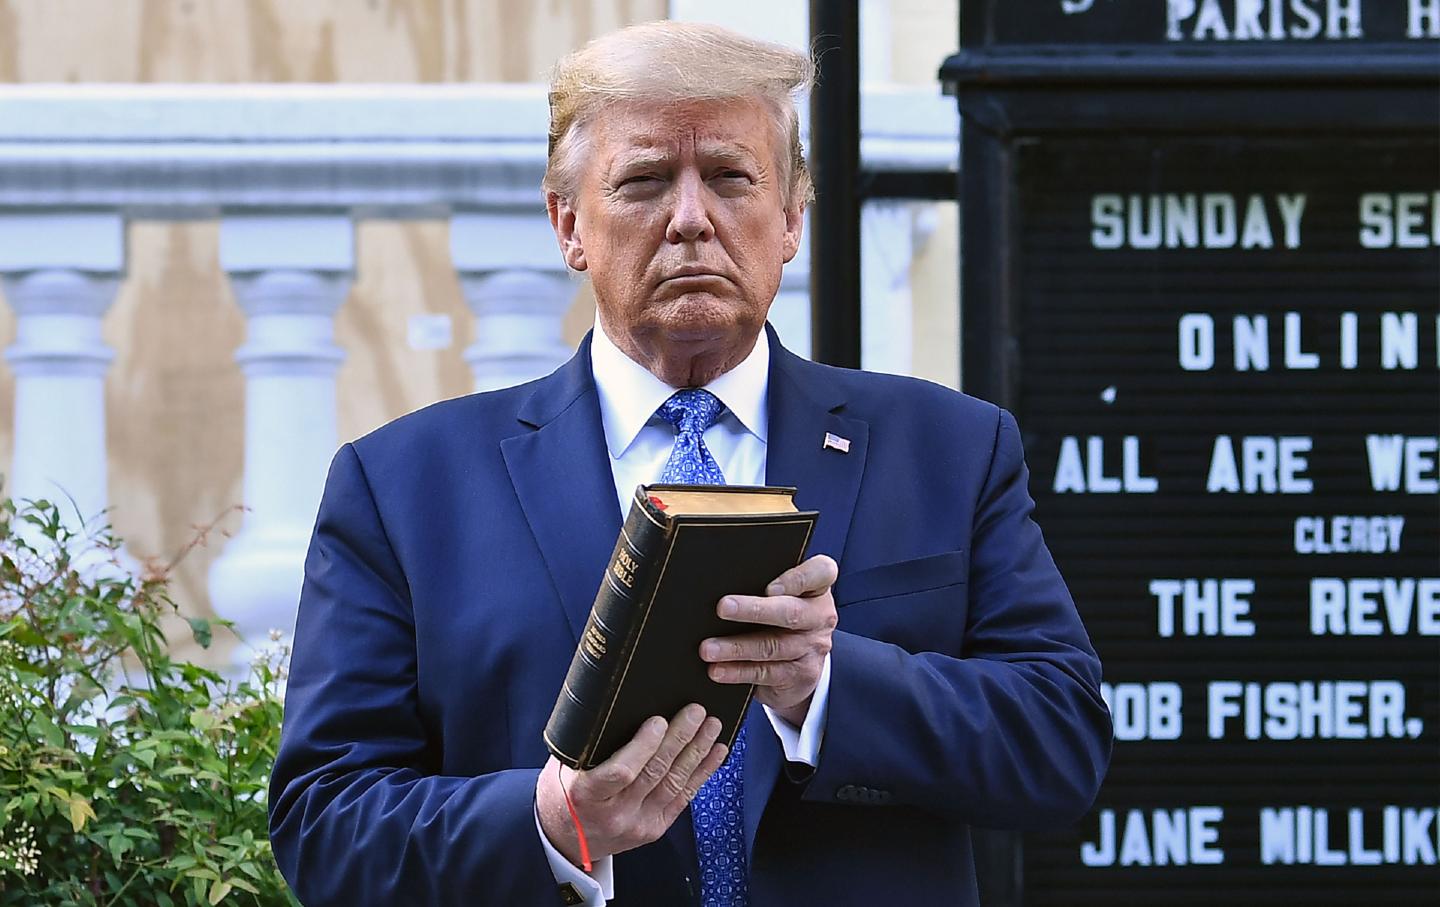 Der damalige US-Präsident Donald Trump hält am 1. Juni 2020 eine Bibel vor der St. John's Episcopal Church in Washington, D.C.. Trump sollte nach tagelangen Protesten gegen Polizeibrutalität eine Fernsehansprache an die Nation halten.